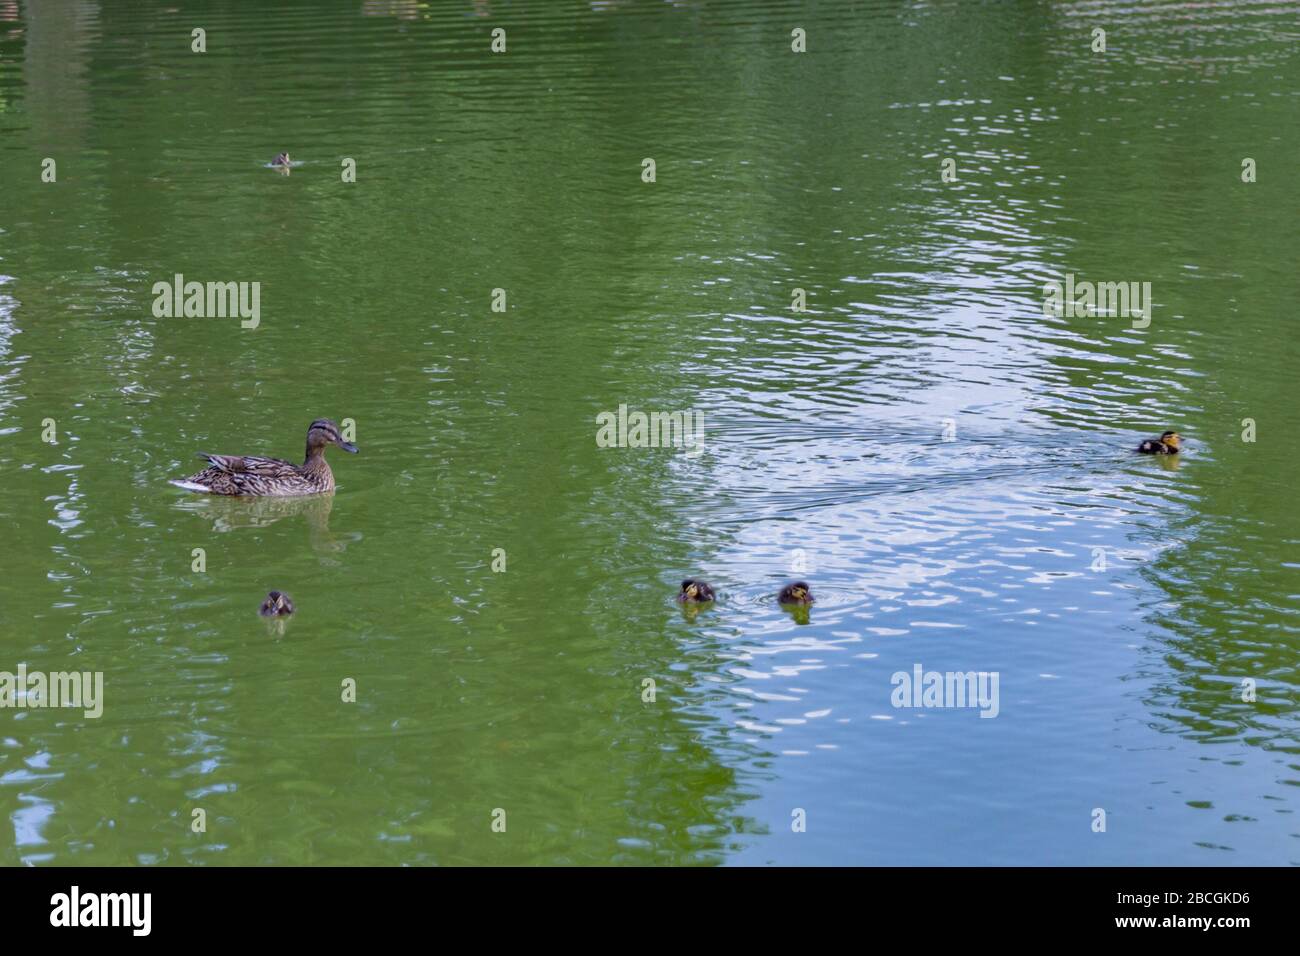 Parigi, Francia - 24 giugno 2016: Anatra anatroccoli in lago ottagonale - Bassin ottogonale. Il Giardino delle Tuileries - Jardin des Tuileries, situato tra t Foto Stock